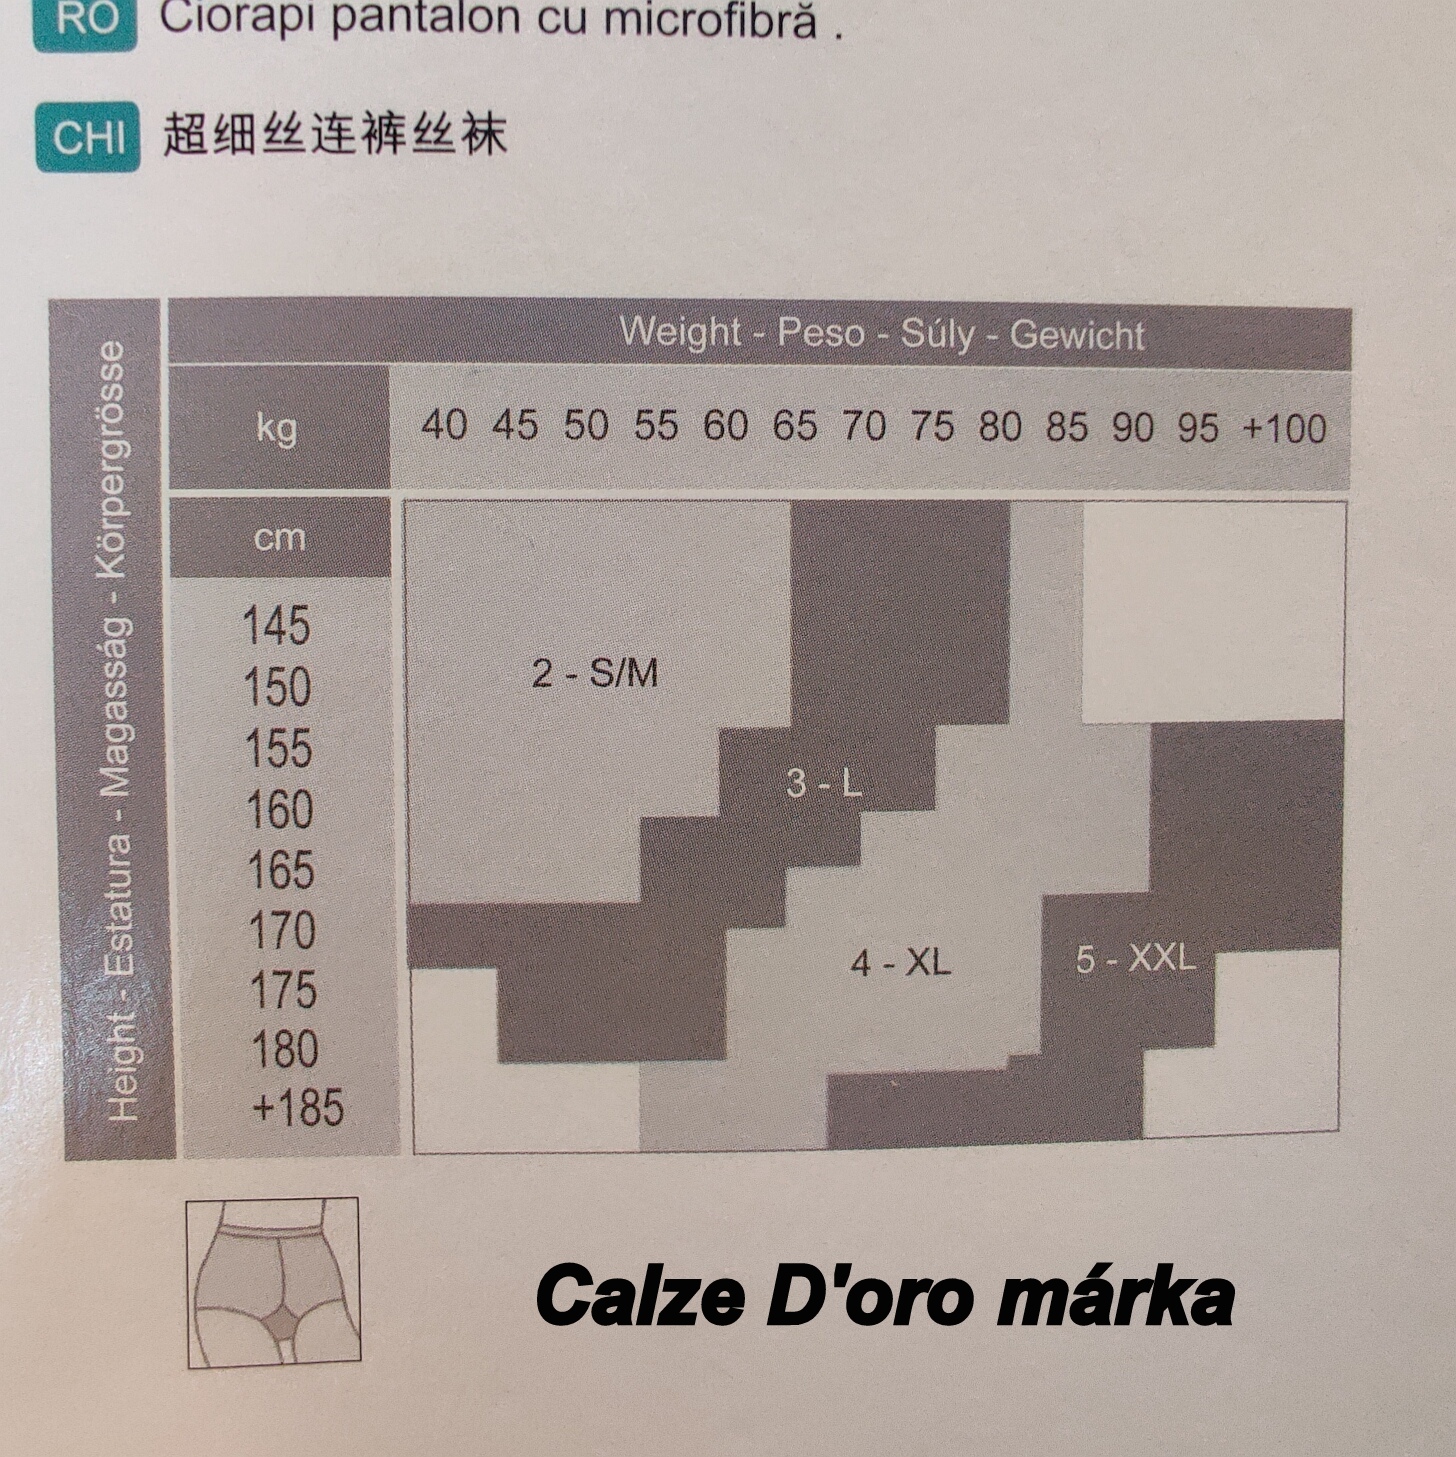 Calze D'oro márka